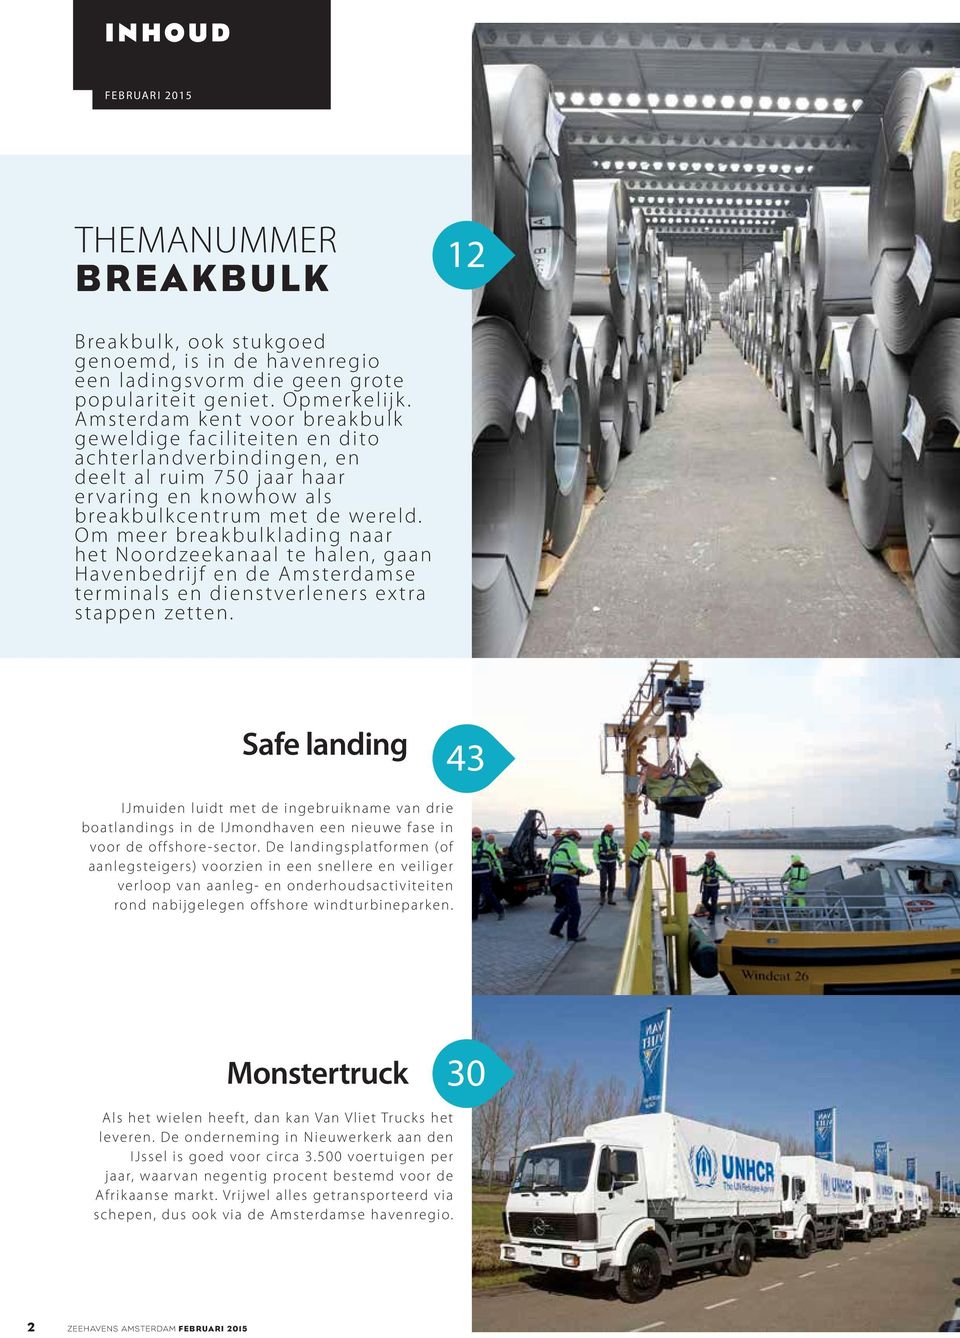 Om meer breakbulklading naar het Noordzeekanaal te halen, gaan Havenbedrijf en de Amsterdamse terminals en dienstverleners extra stappen zetten.